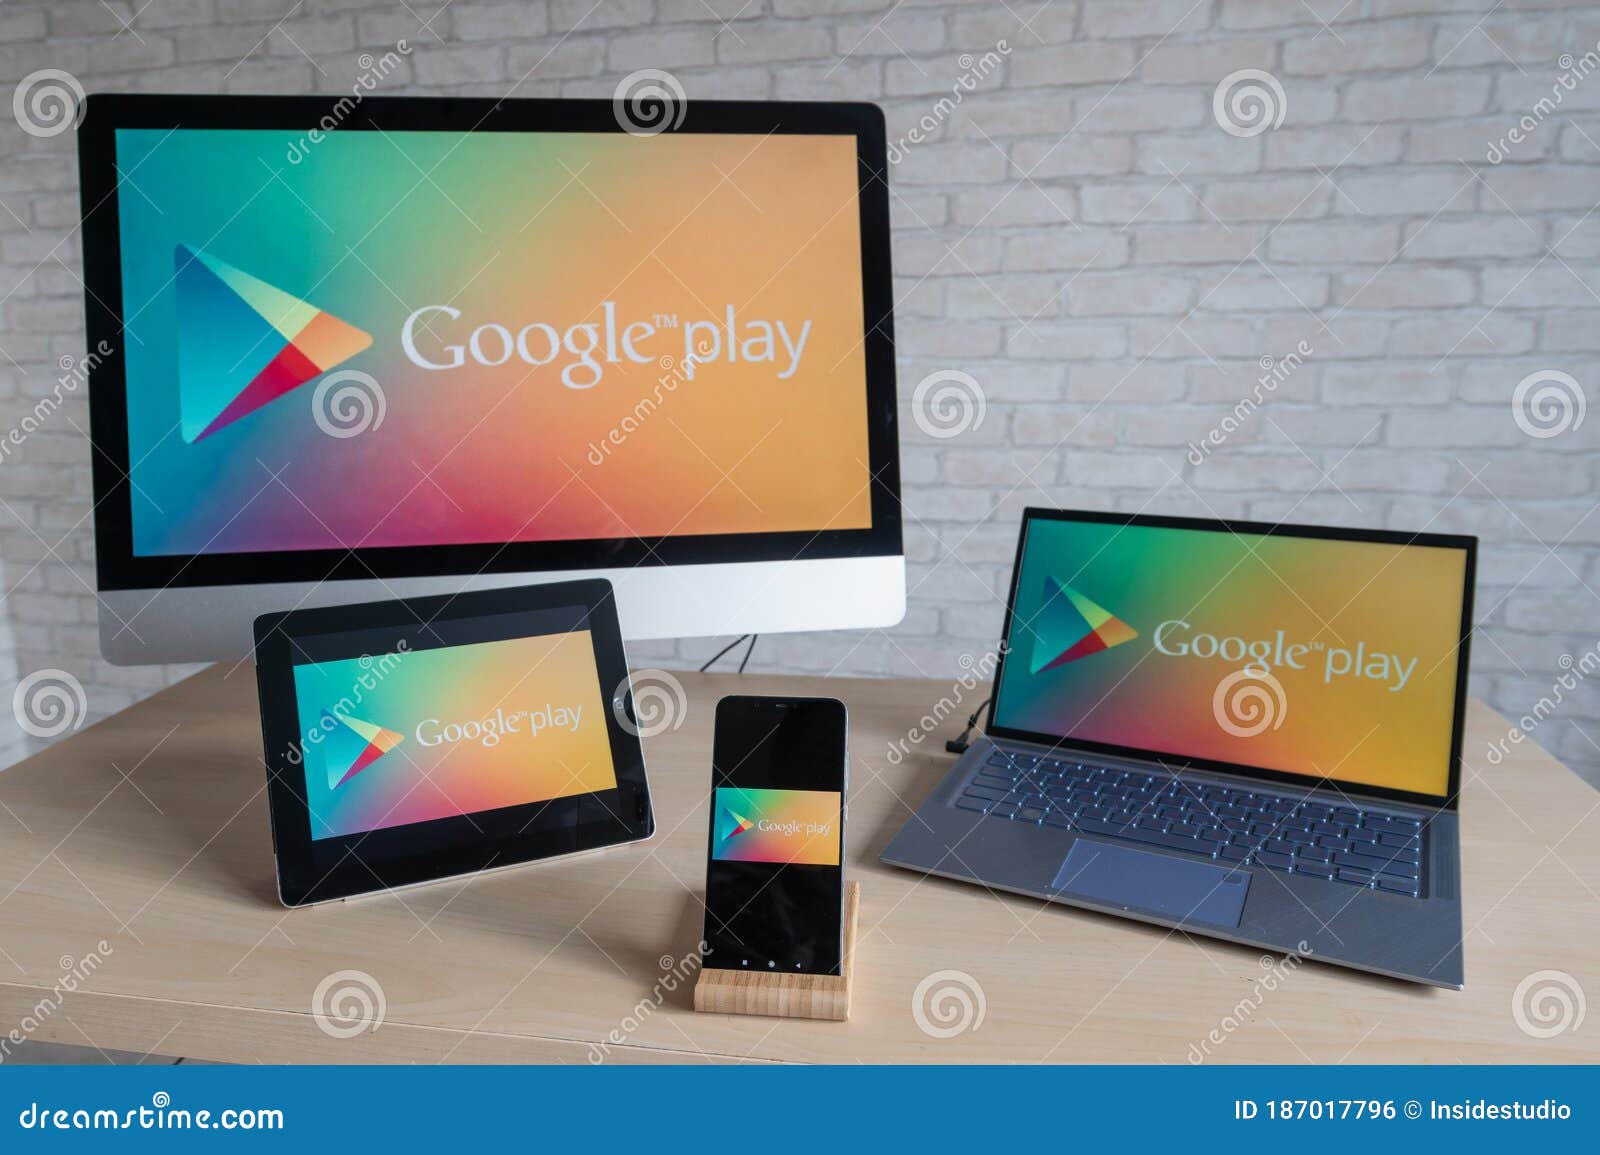 Logotipo Google Play Nas Telas De Um Laptop Digital Para Tablet E